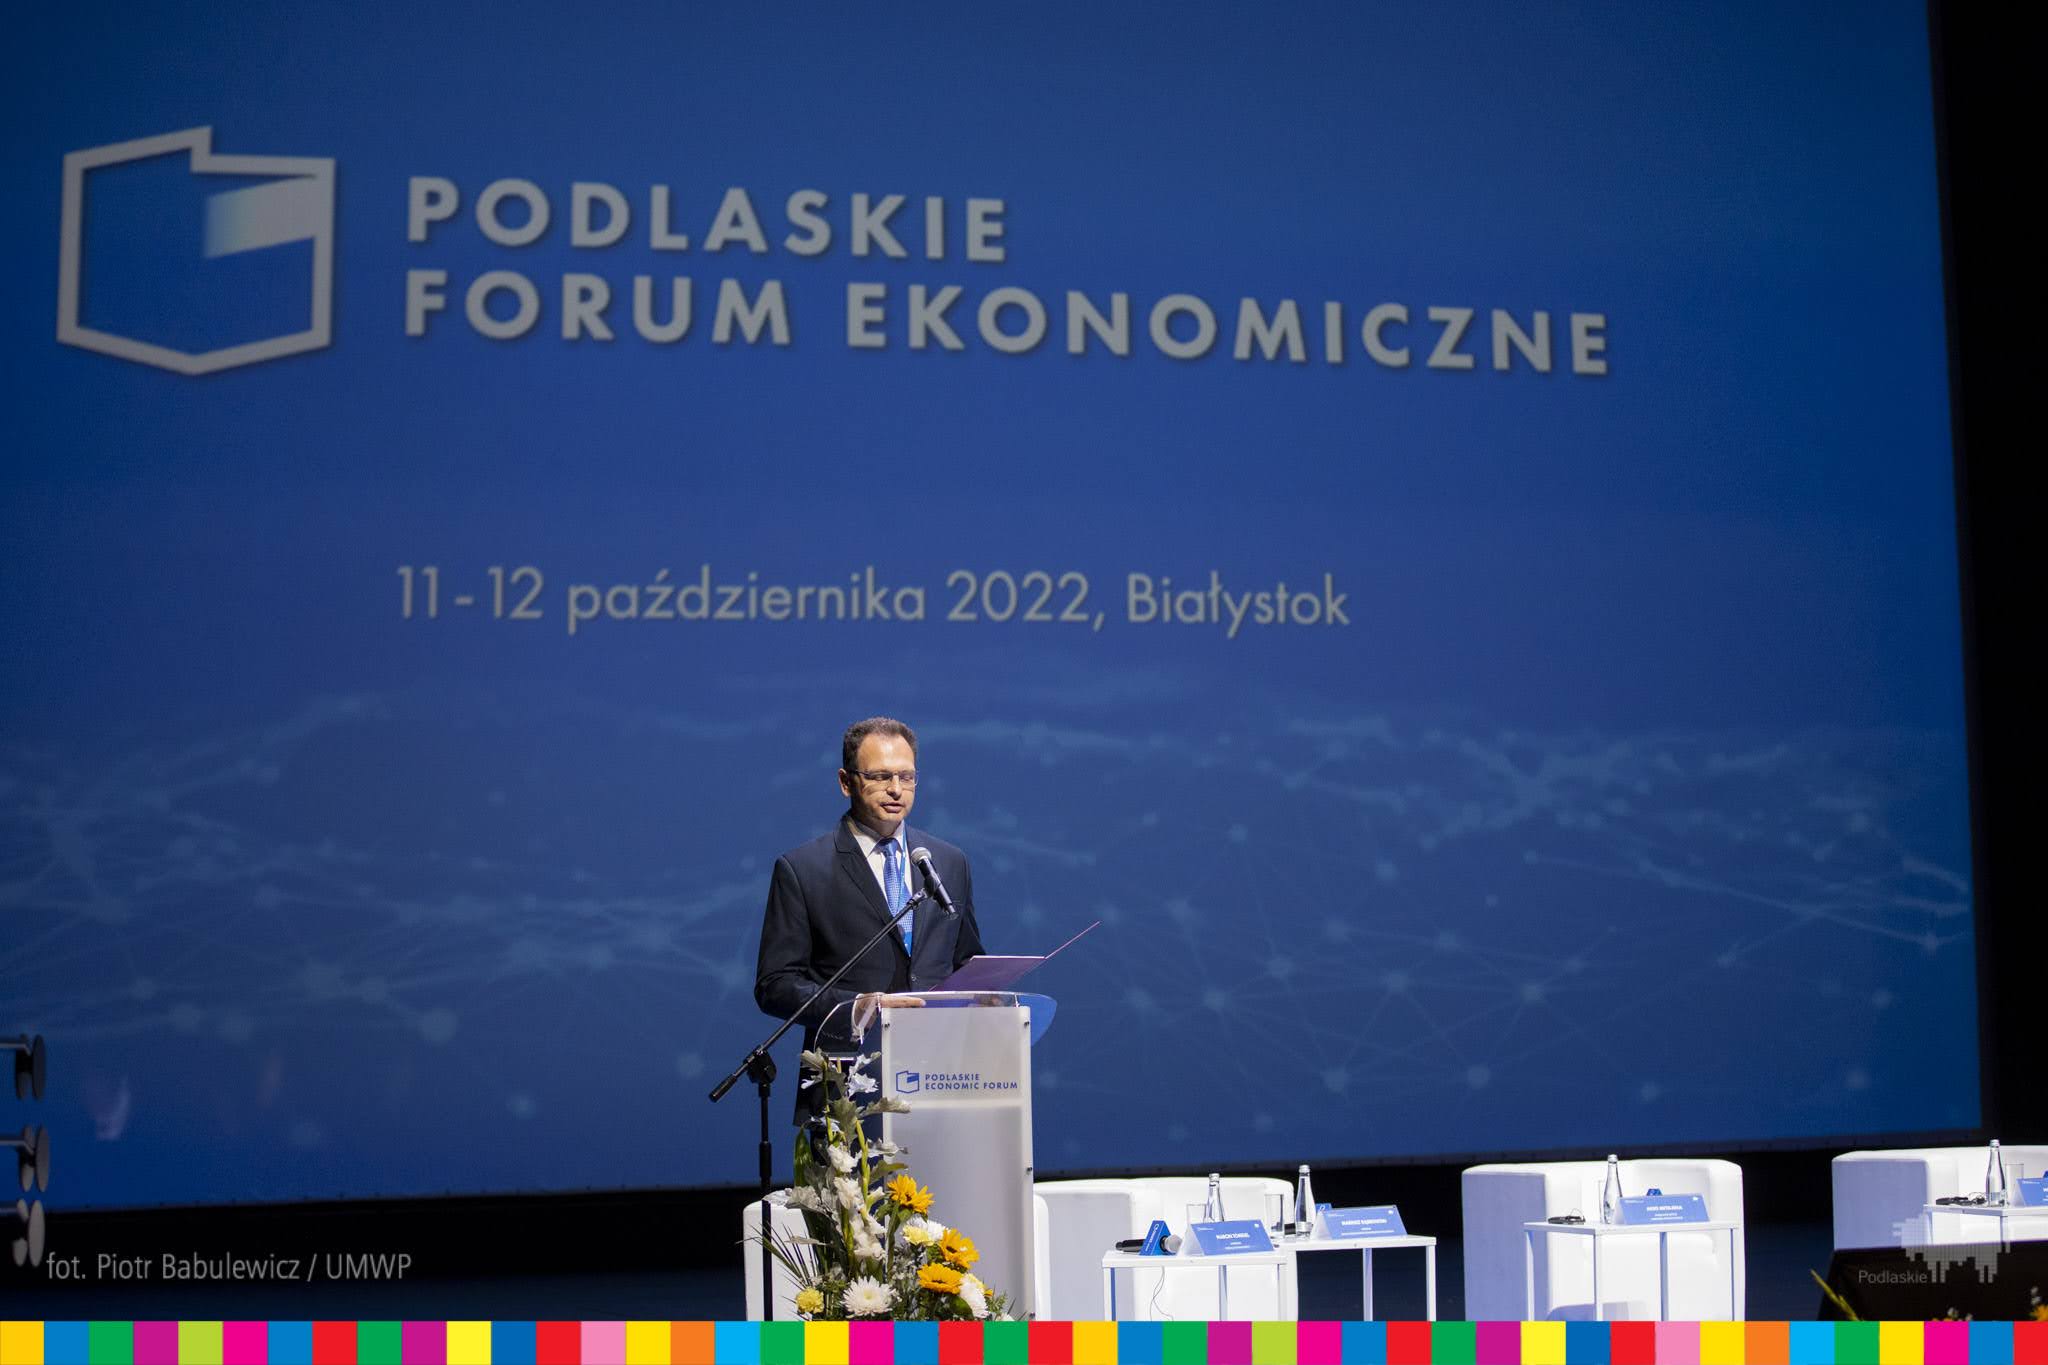 scena główna opery, moderator zapowiada rozpoczęcie podlaskiego forum ekonomicznego 2022